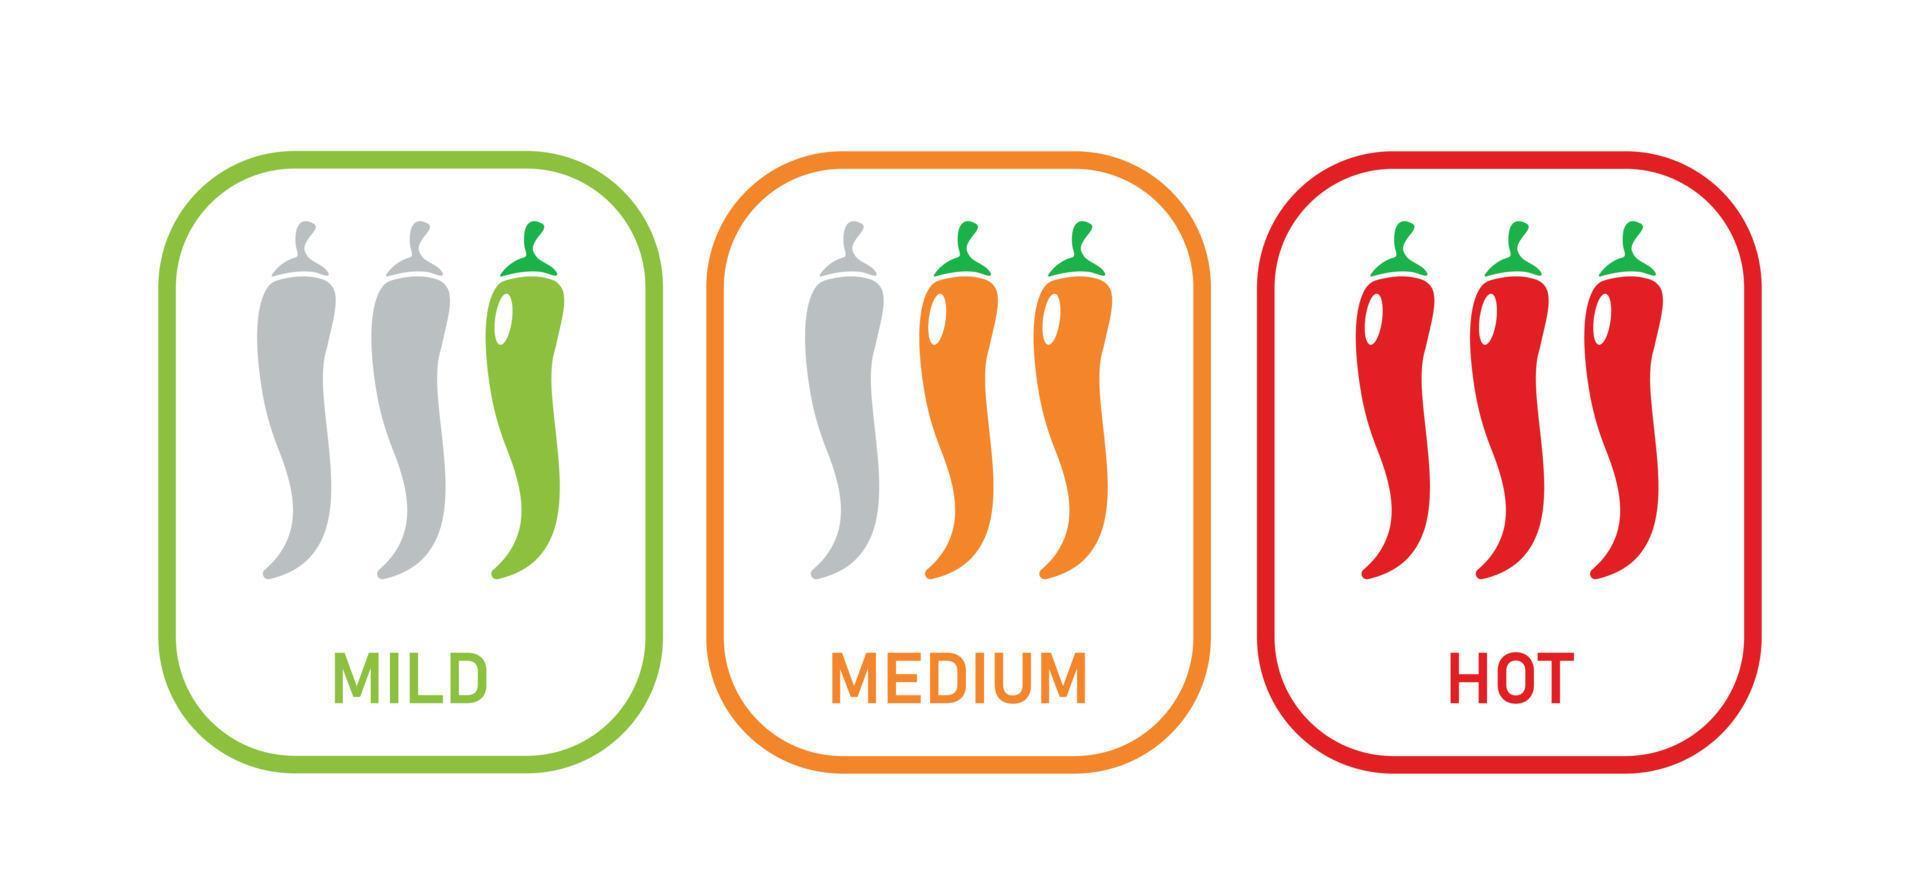 níveis de pimenta picante. suave, picante, quente. conjunto de ícones de comida. indicador de escala. ilustração vetorial em fundo branco vetor